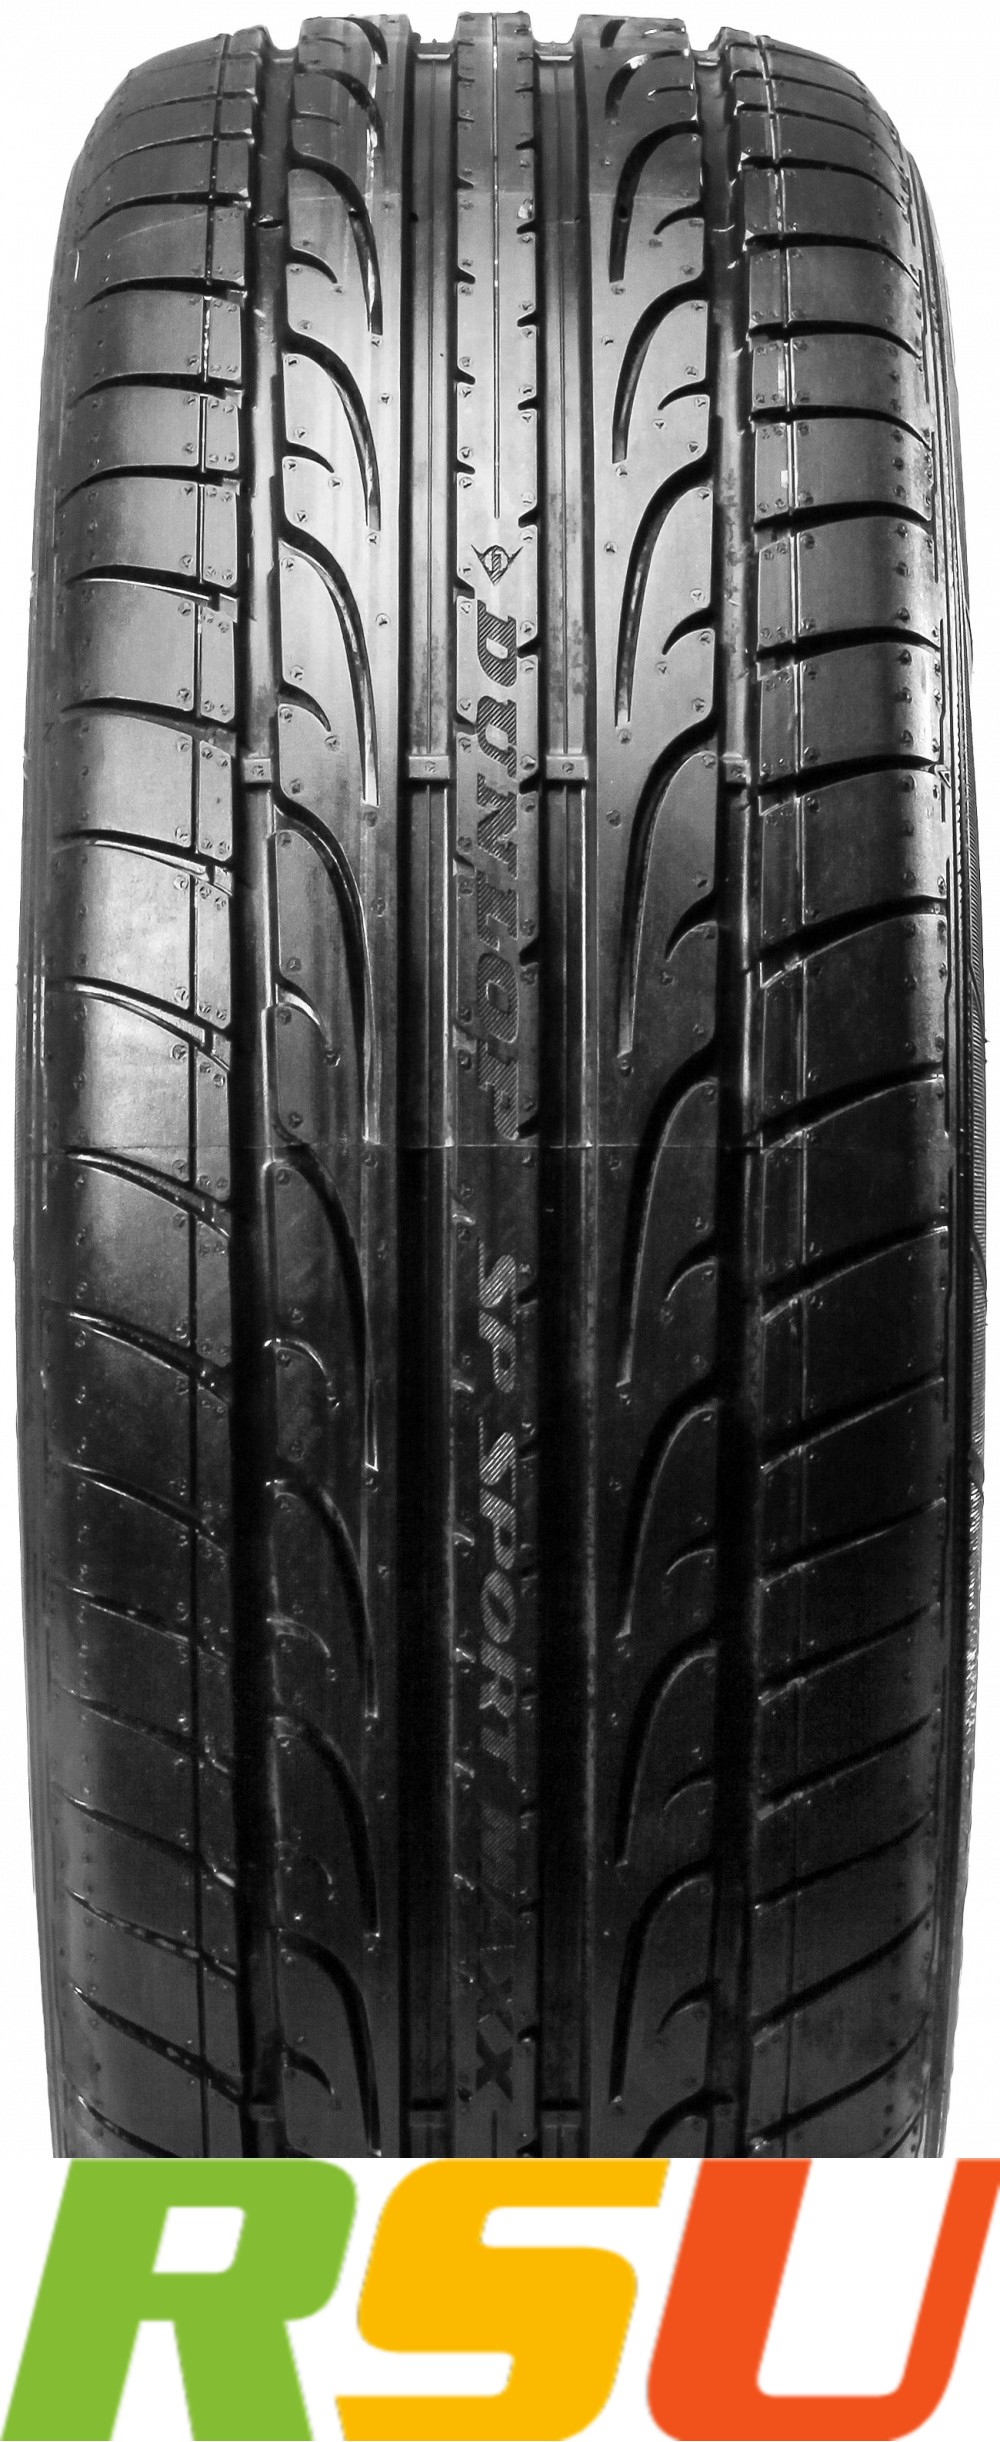 2x Dunlop SP Sport Maxx XL Sommerreifen R18 DOT19 eBay (Z)Y | 265/35 4038526234292 97